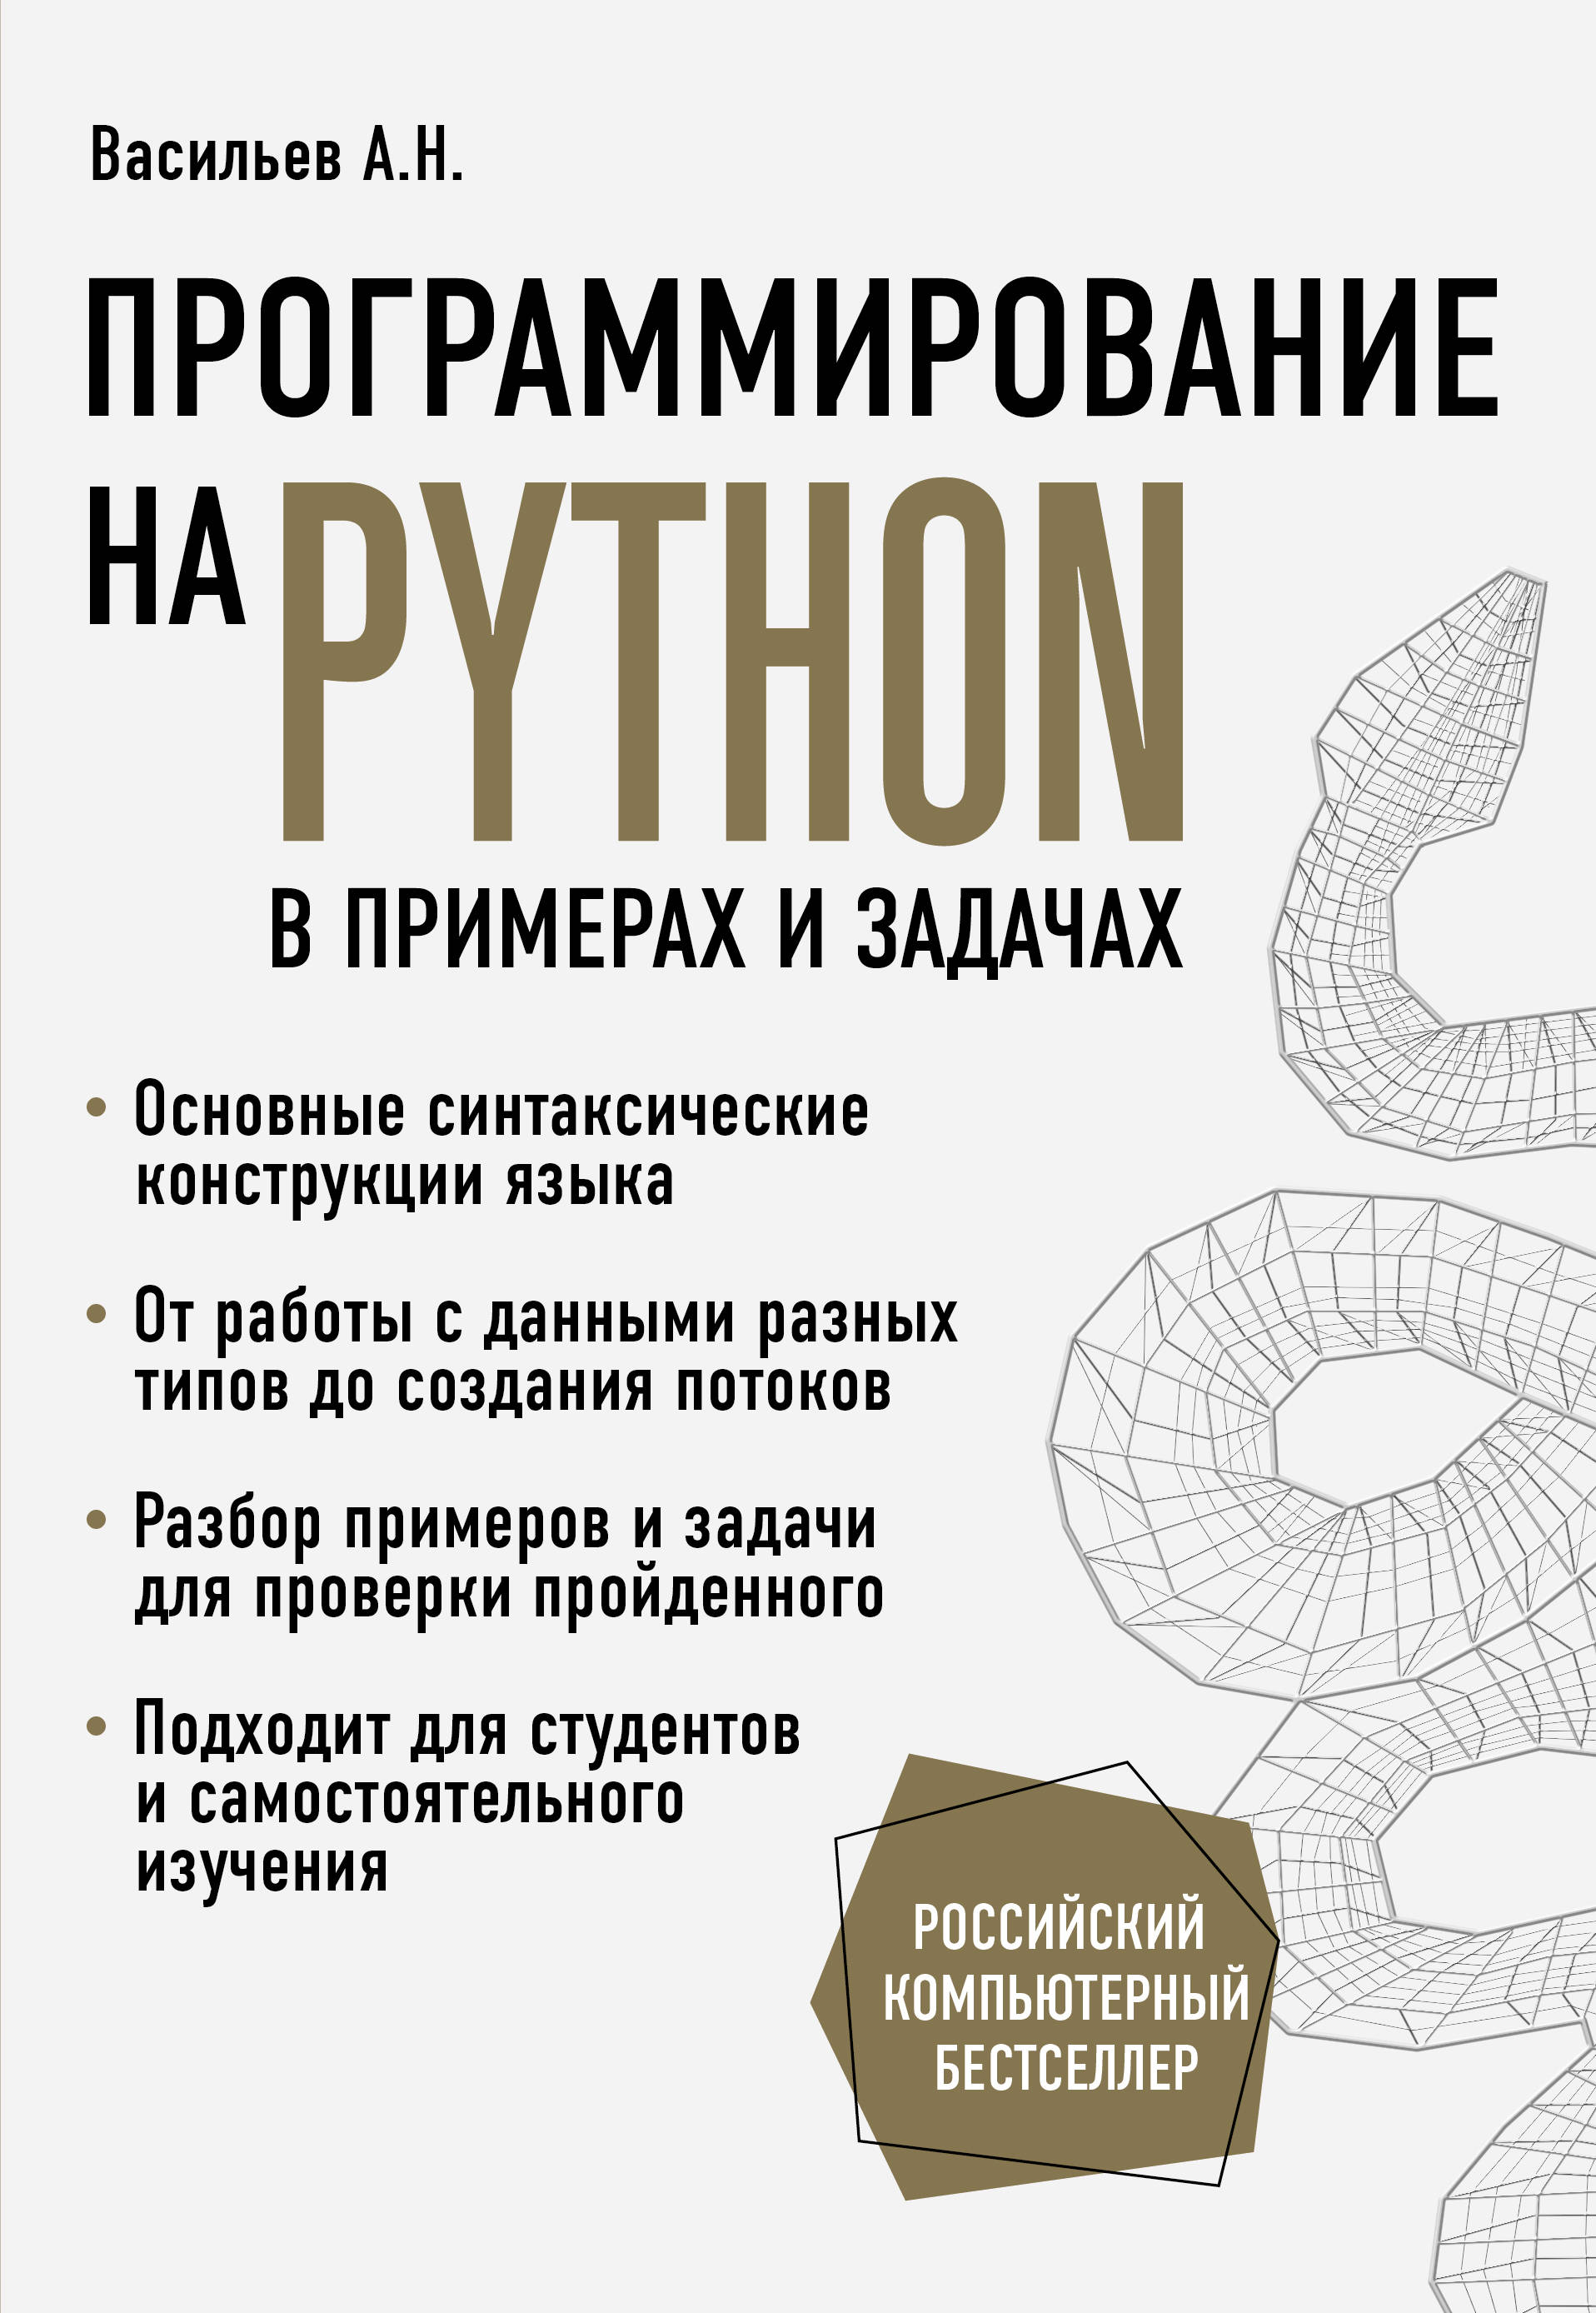 Питон книга программирование. Васильев а н программирование. Программирование на Python книга. Васильев а н программирование на Python.